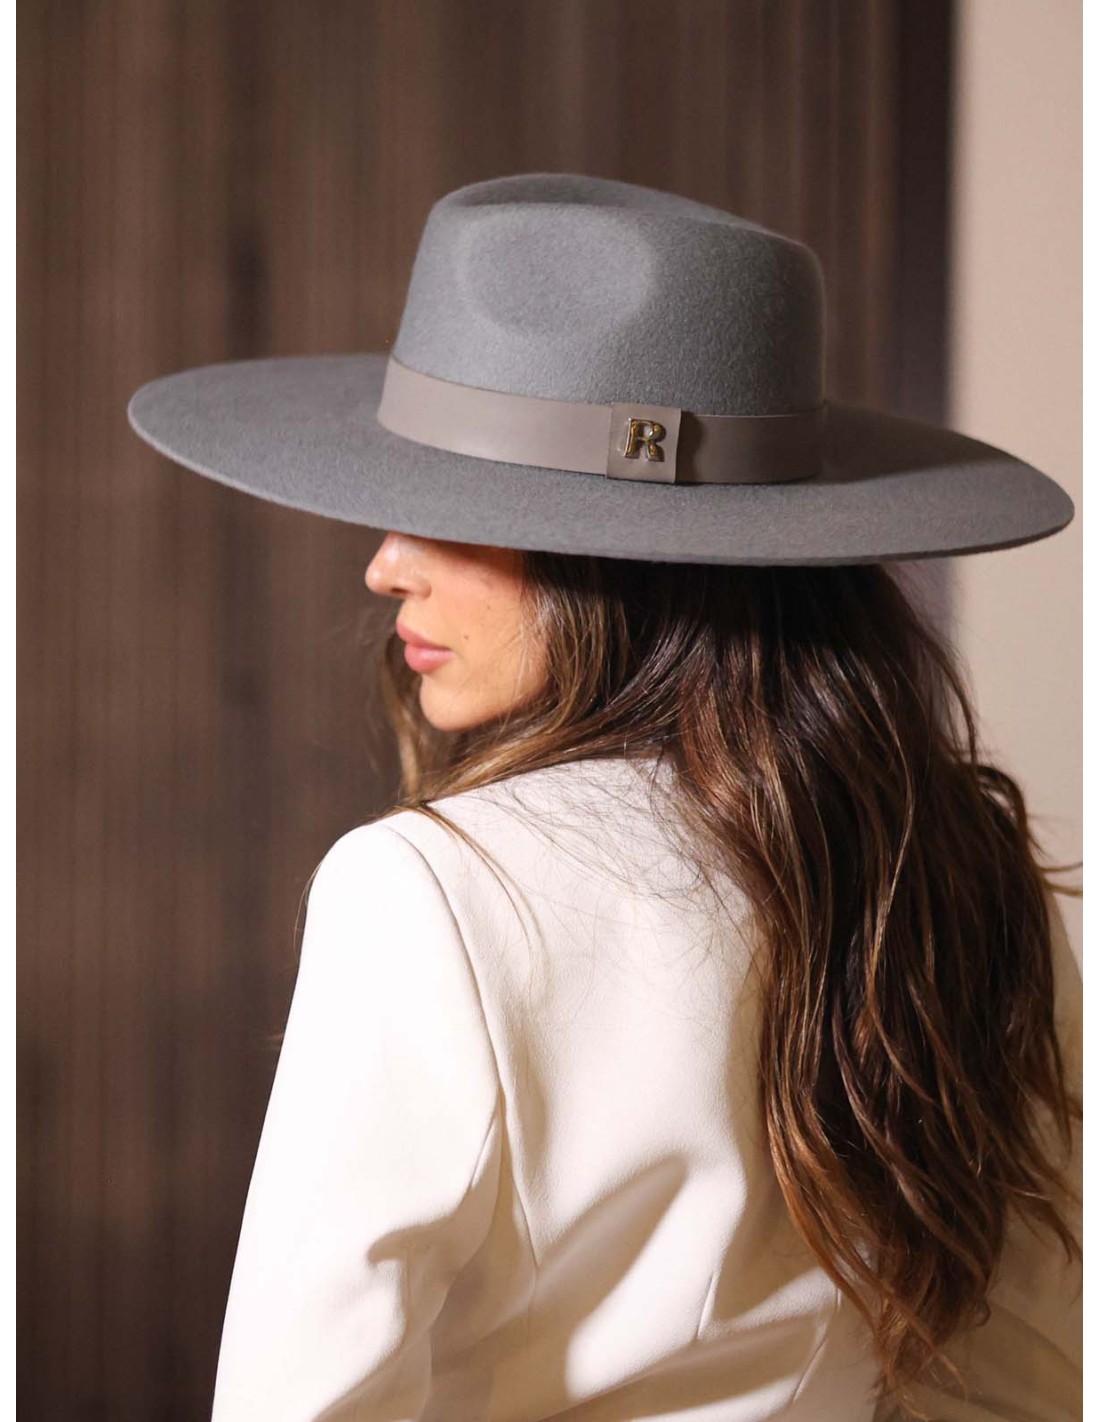 Chapeau femme bord large laine grise et noir - Hatsquality